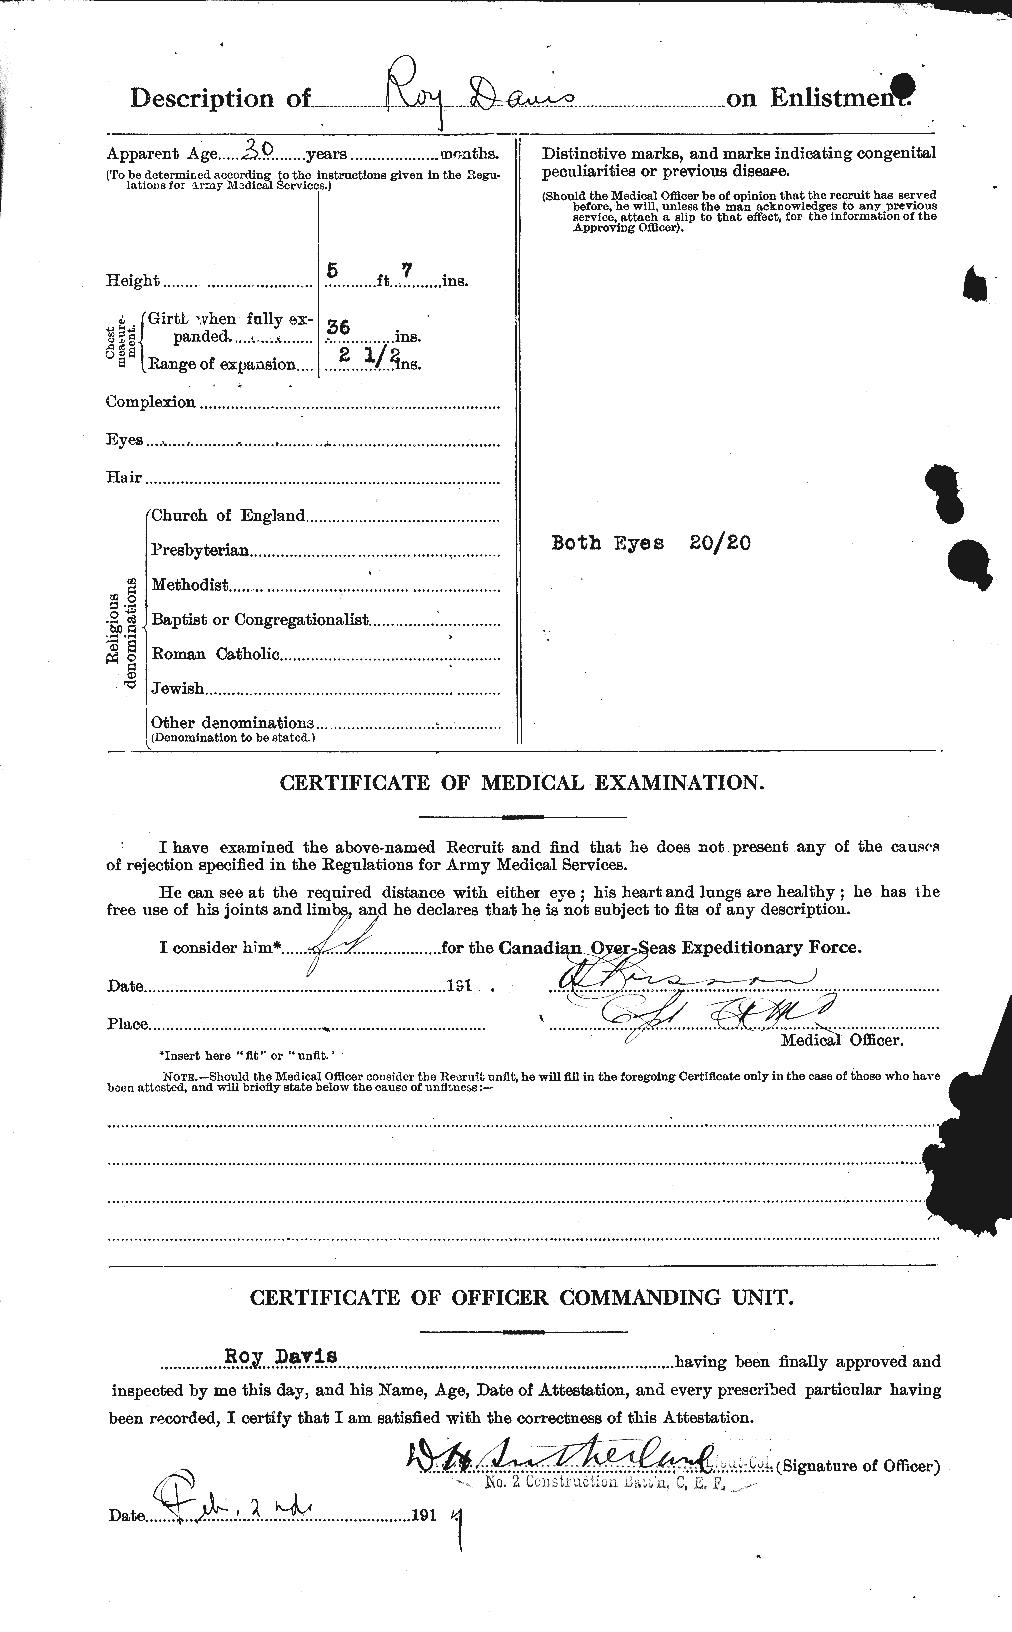 Dossiers du Personnel de la Première Guerre mondiale - CEC 279175b